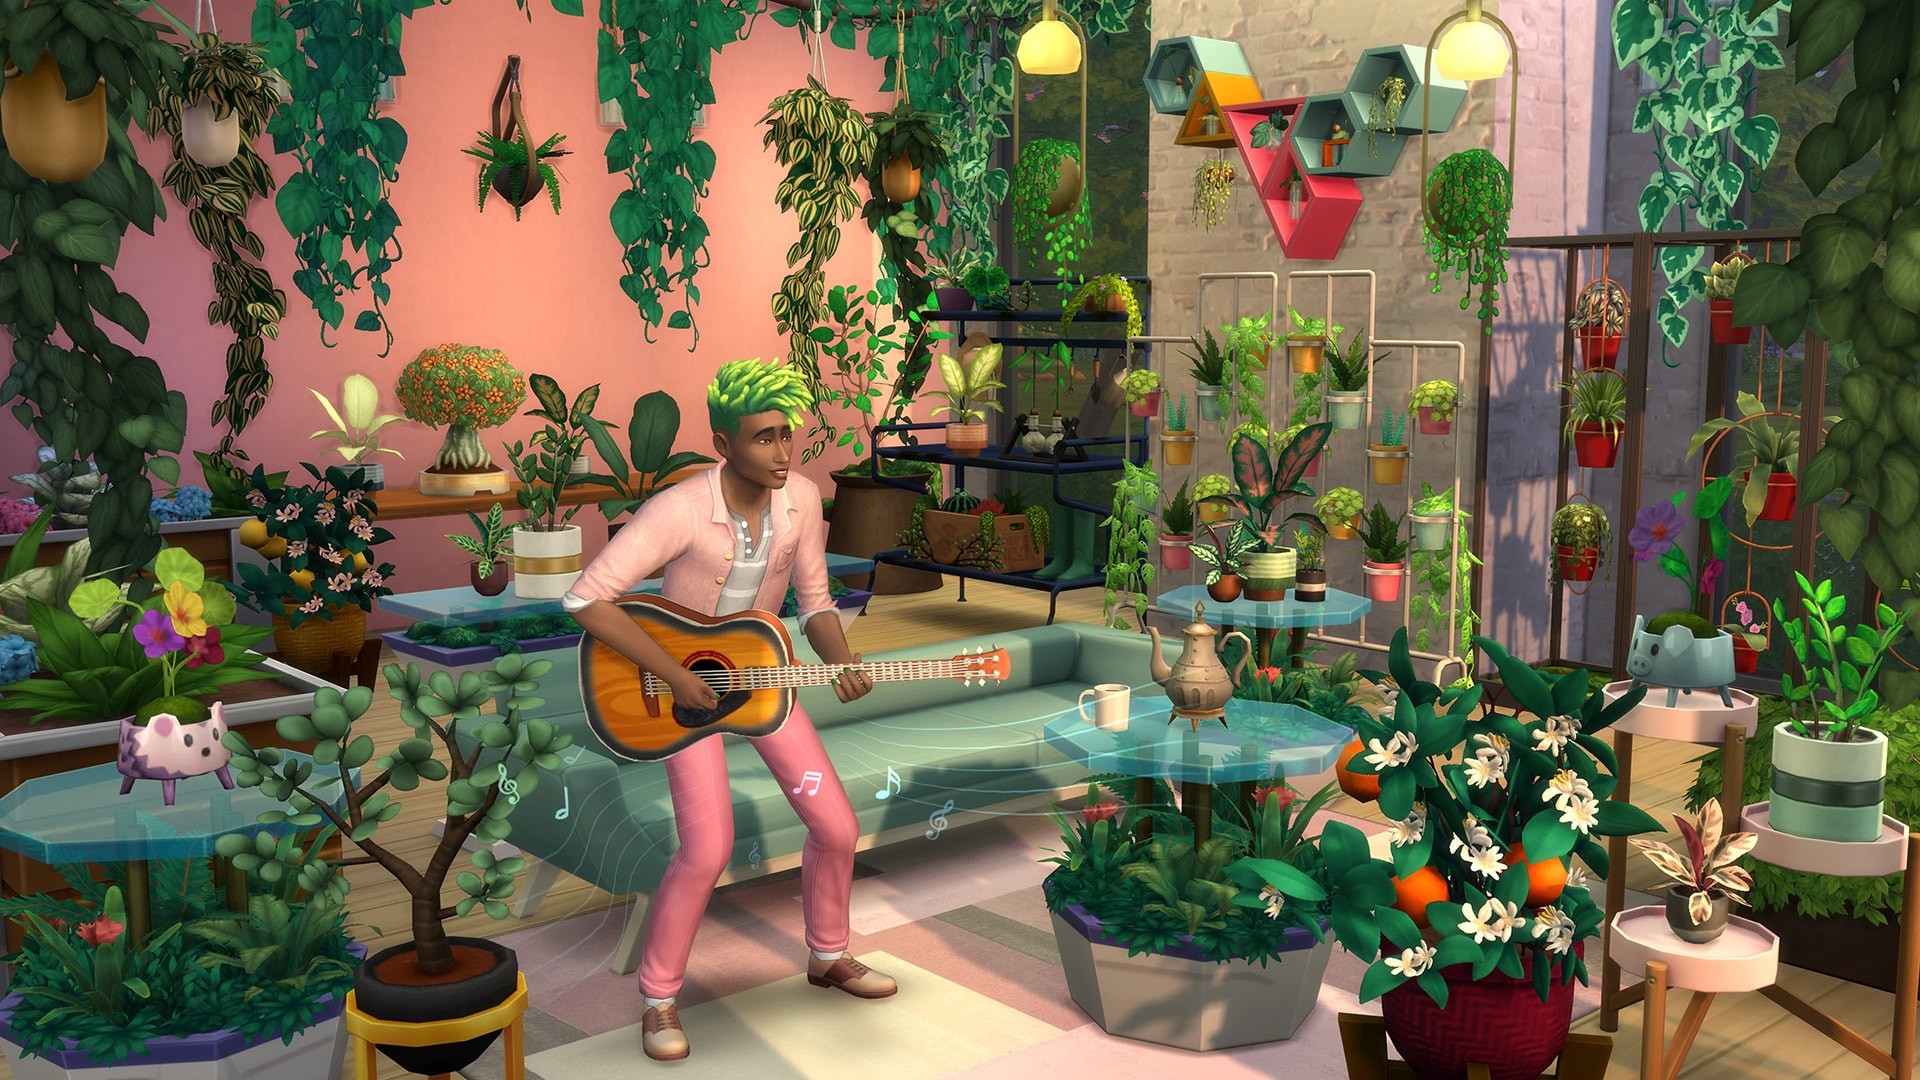 [$ 7.82] The Sims 4 - Blooming Rooms Kit DLC Origin CD Key